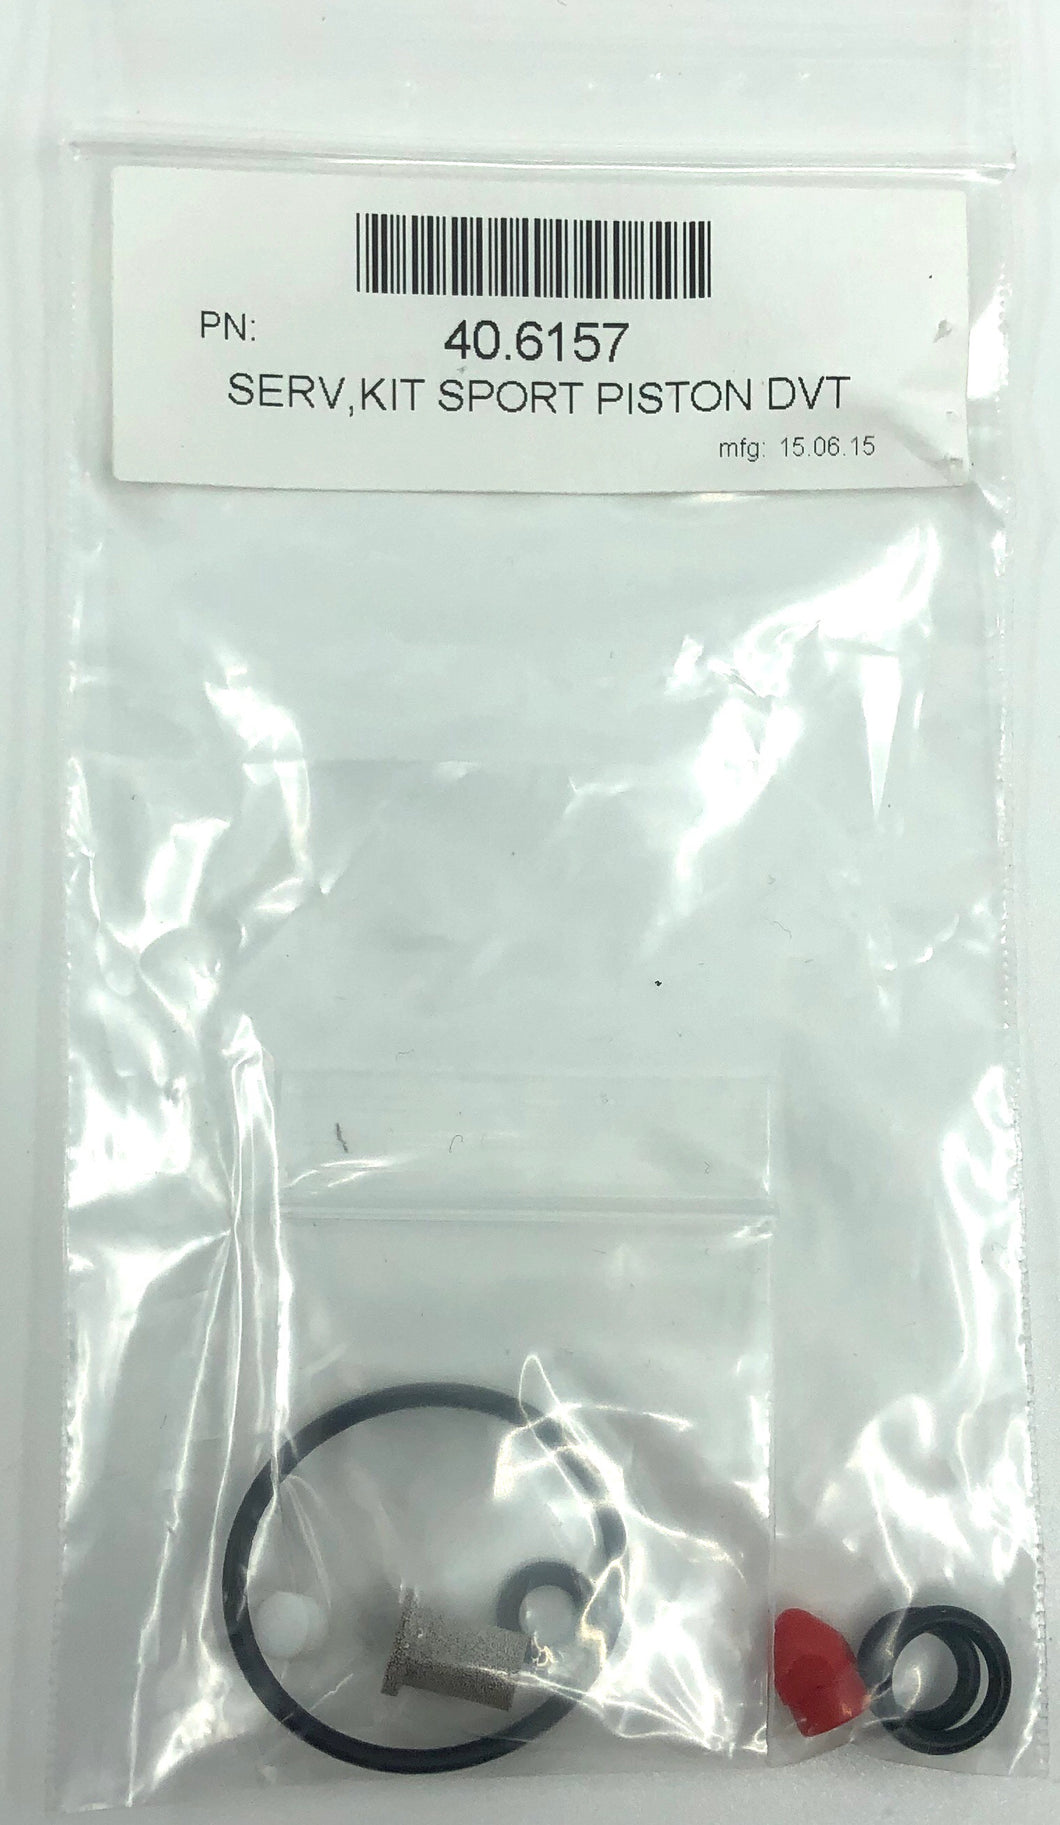 Oceanic Sport Piston DVT Service Kit 40.6157